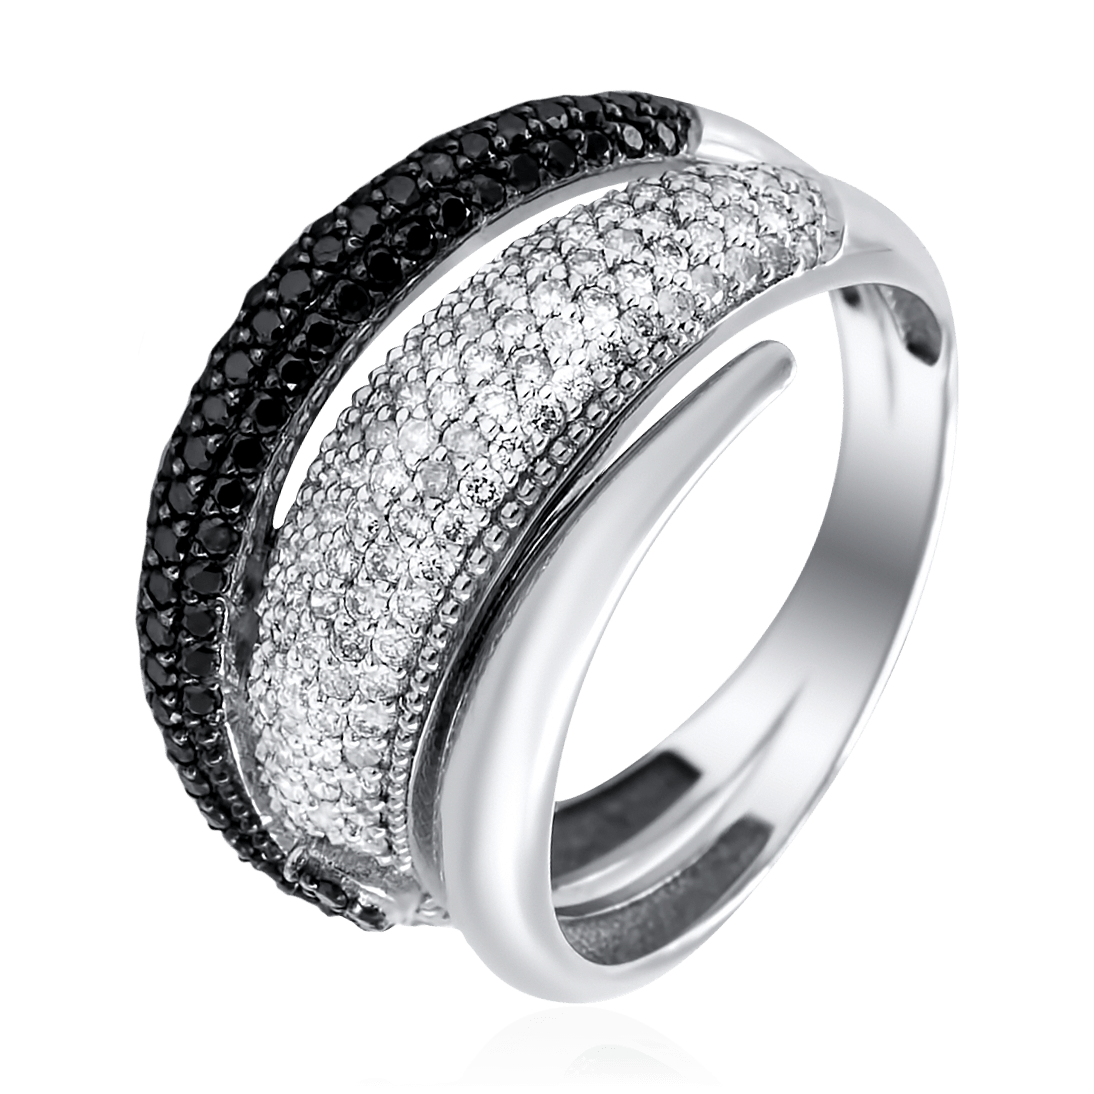 Обручальное кольцо 1385603 1 1 1 с бриллиантовой крошкой. Кольцо с бриллиантовой крошкой. Кольцо с алмазной крошкой. Кольцо с крошкой бриллианта.